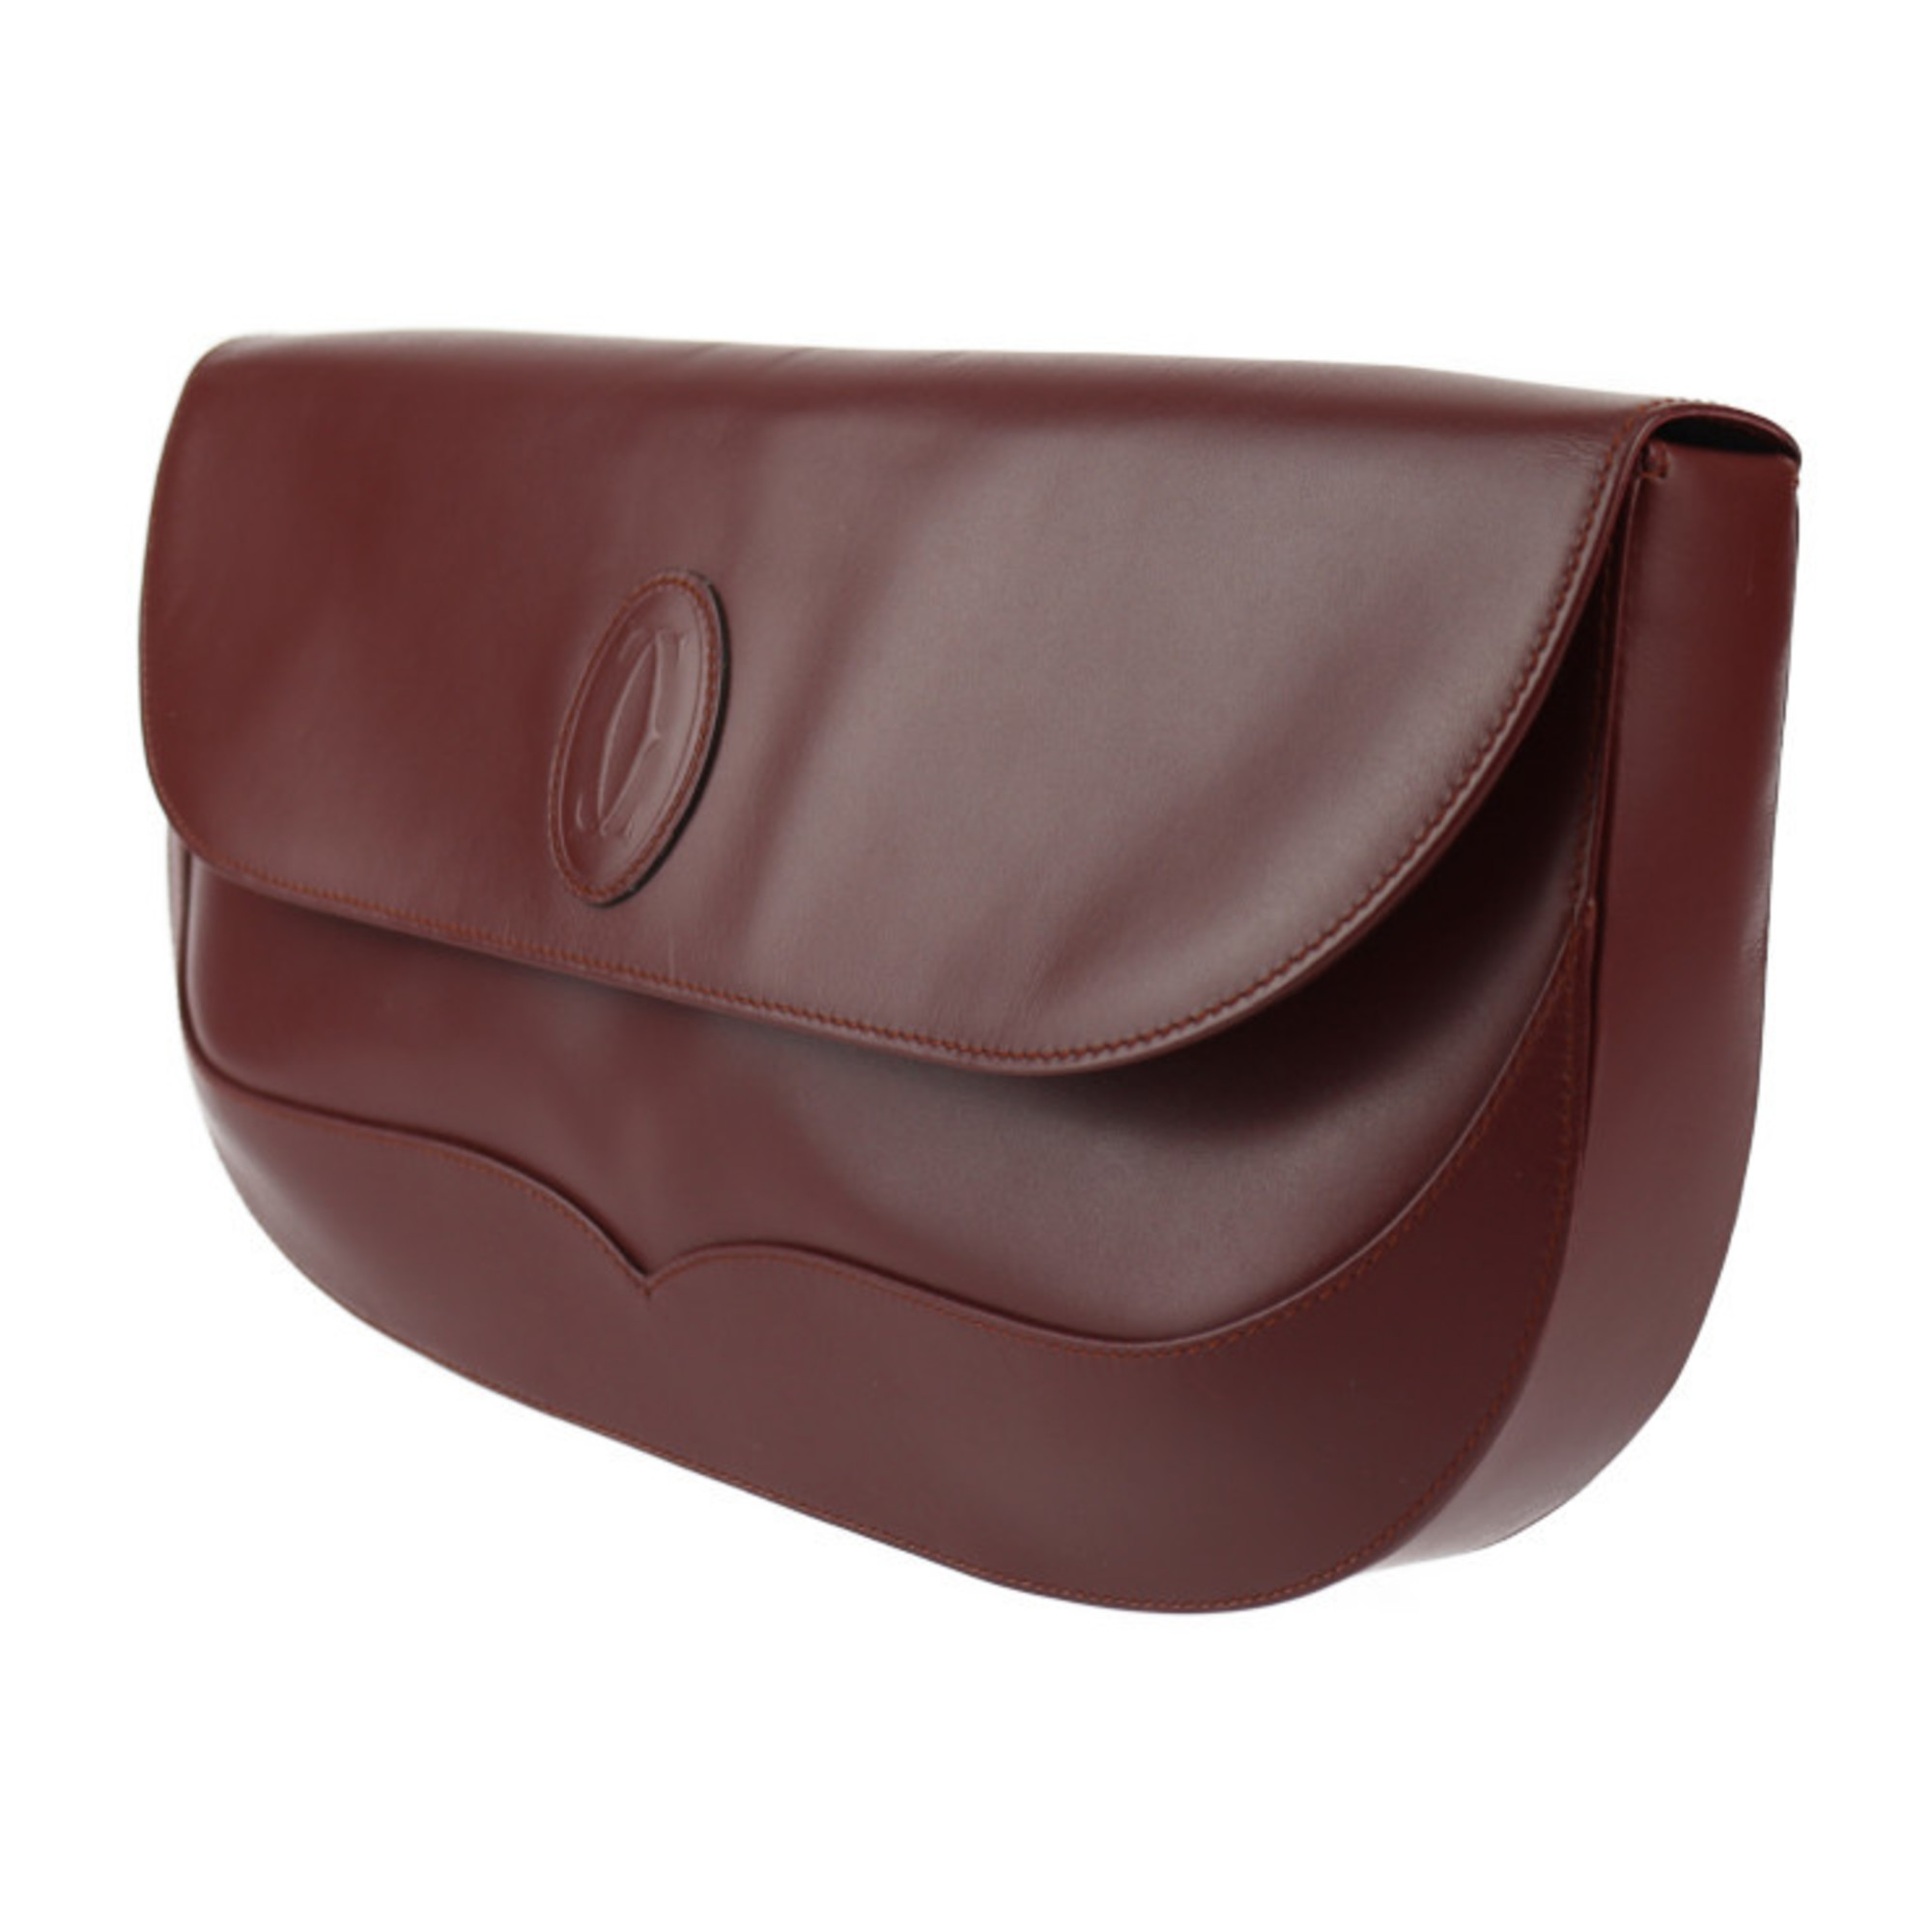 CARTIER Mustline Clutch Bag Leather Bordeaux Second Flap